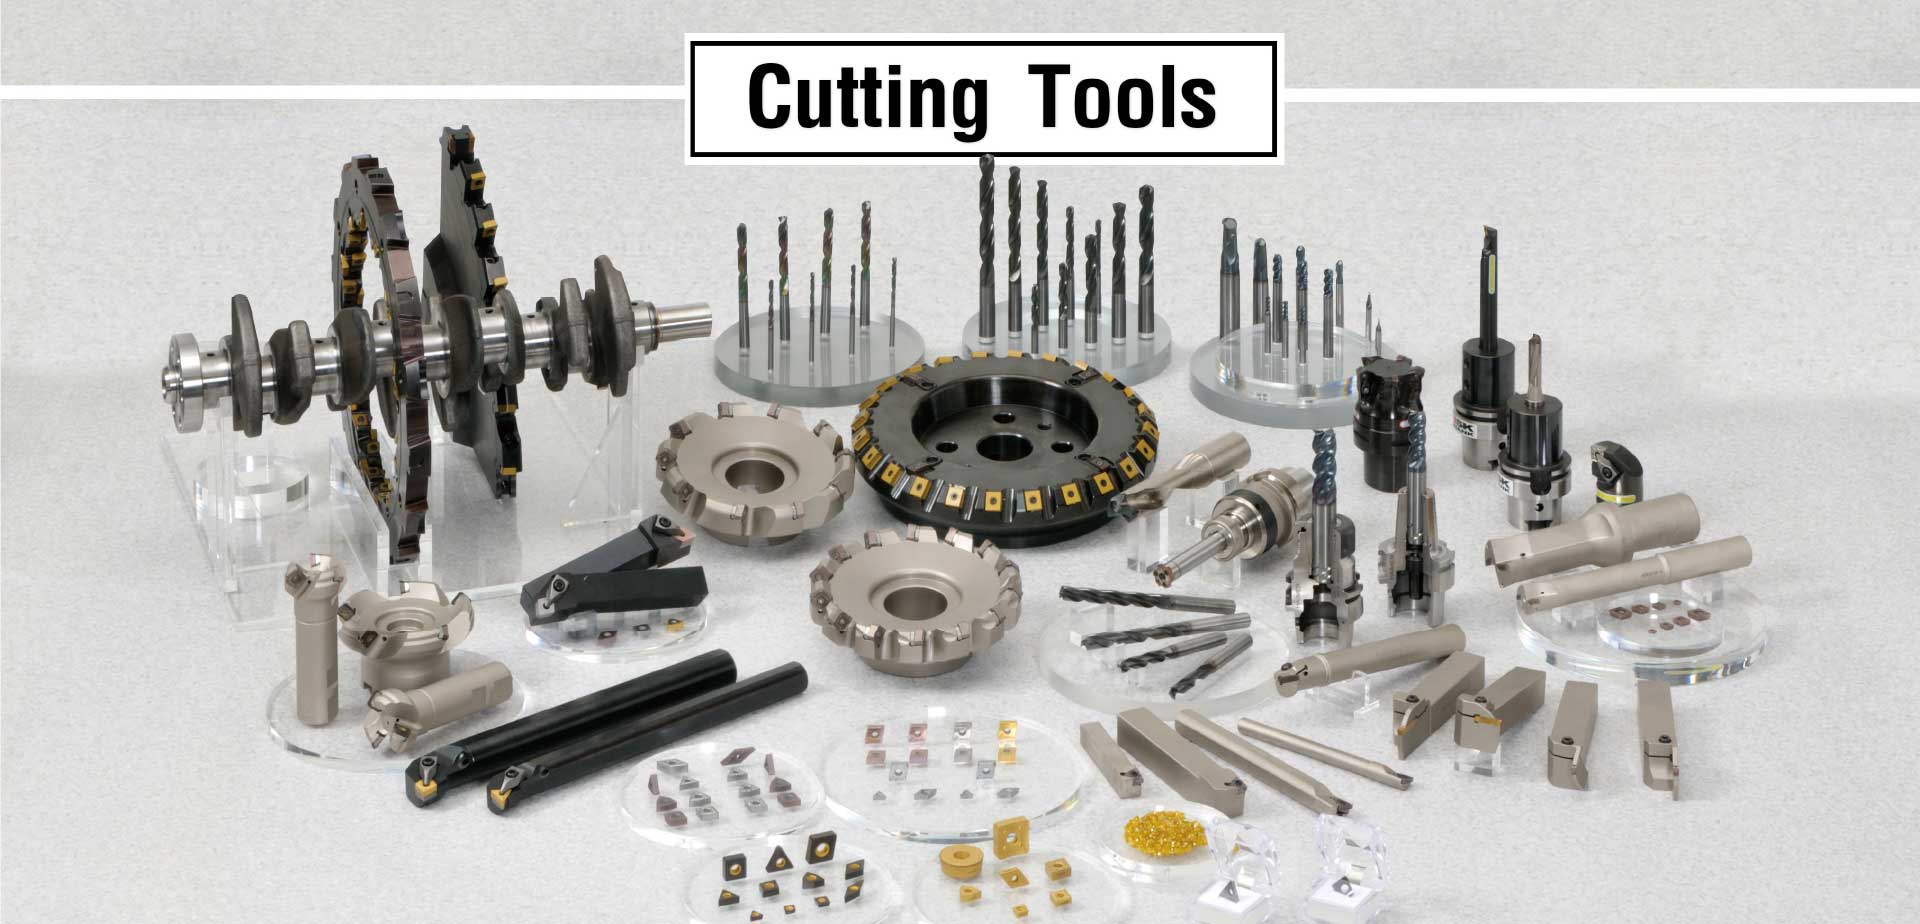 Cutting Tool